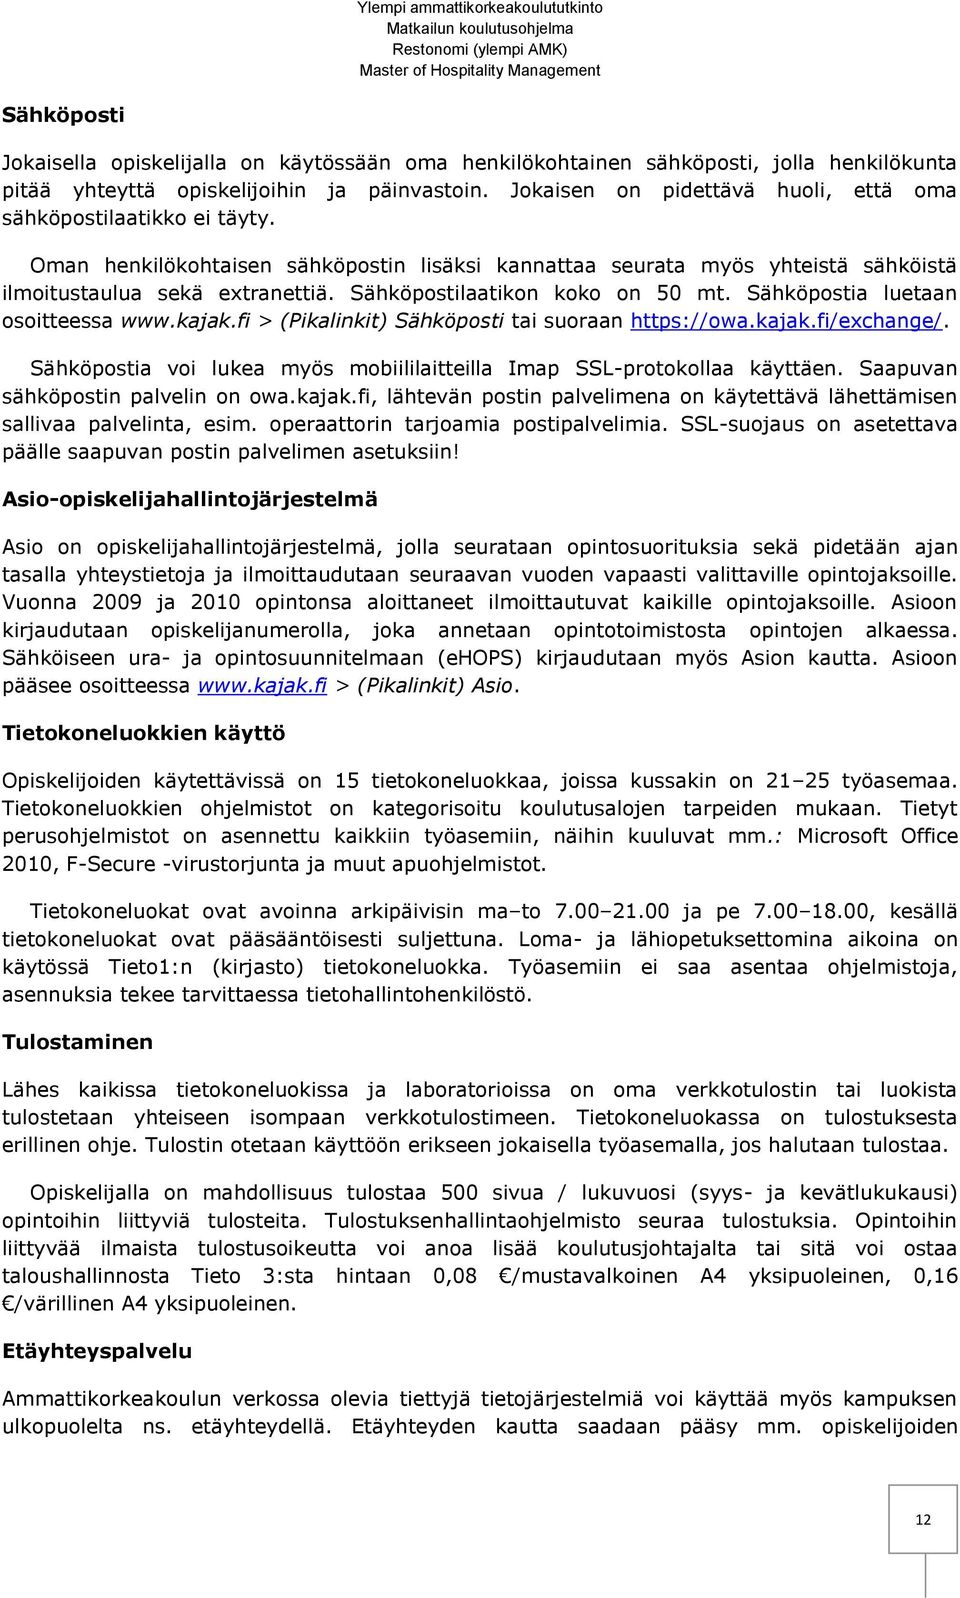 Sähköpostilaatikon koko on 50 mt. Sähköpostia luetaan osoitteessa www.kajak.fi > (Pikalinkit) Sähköposti tai suoraan https://owa.kajak.fi/exchange/.